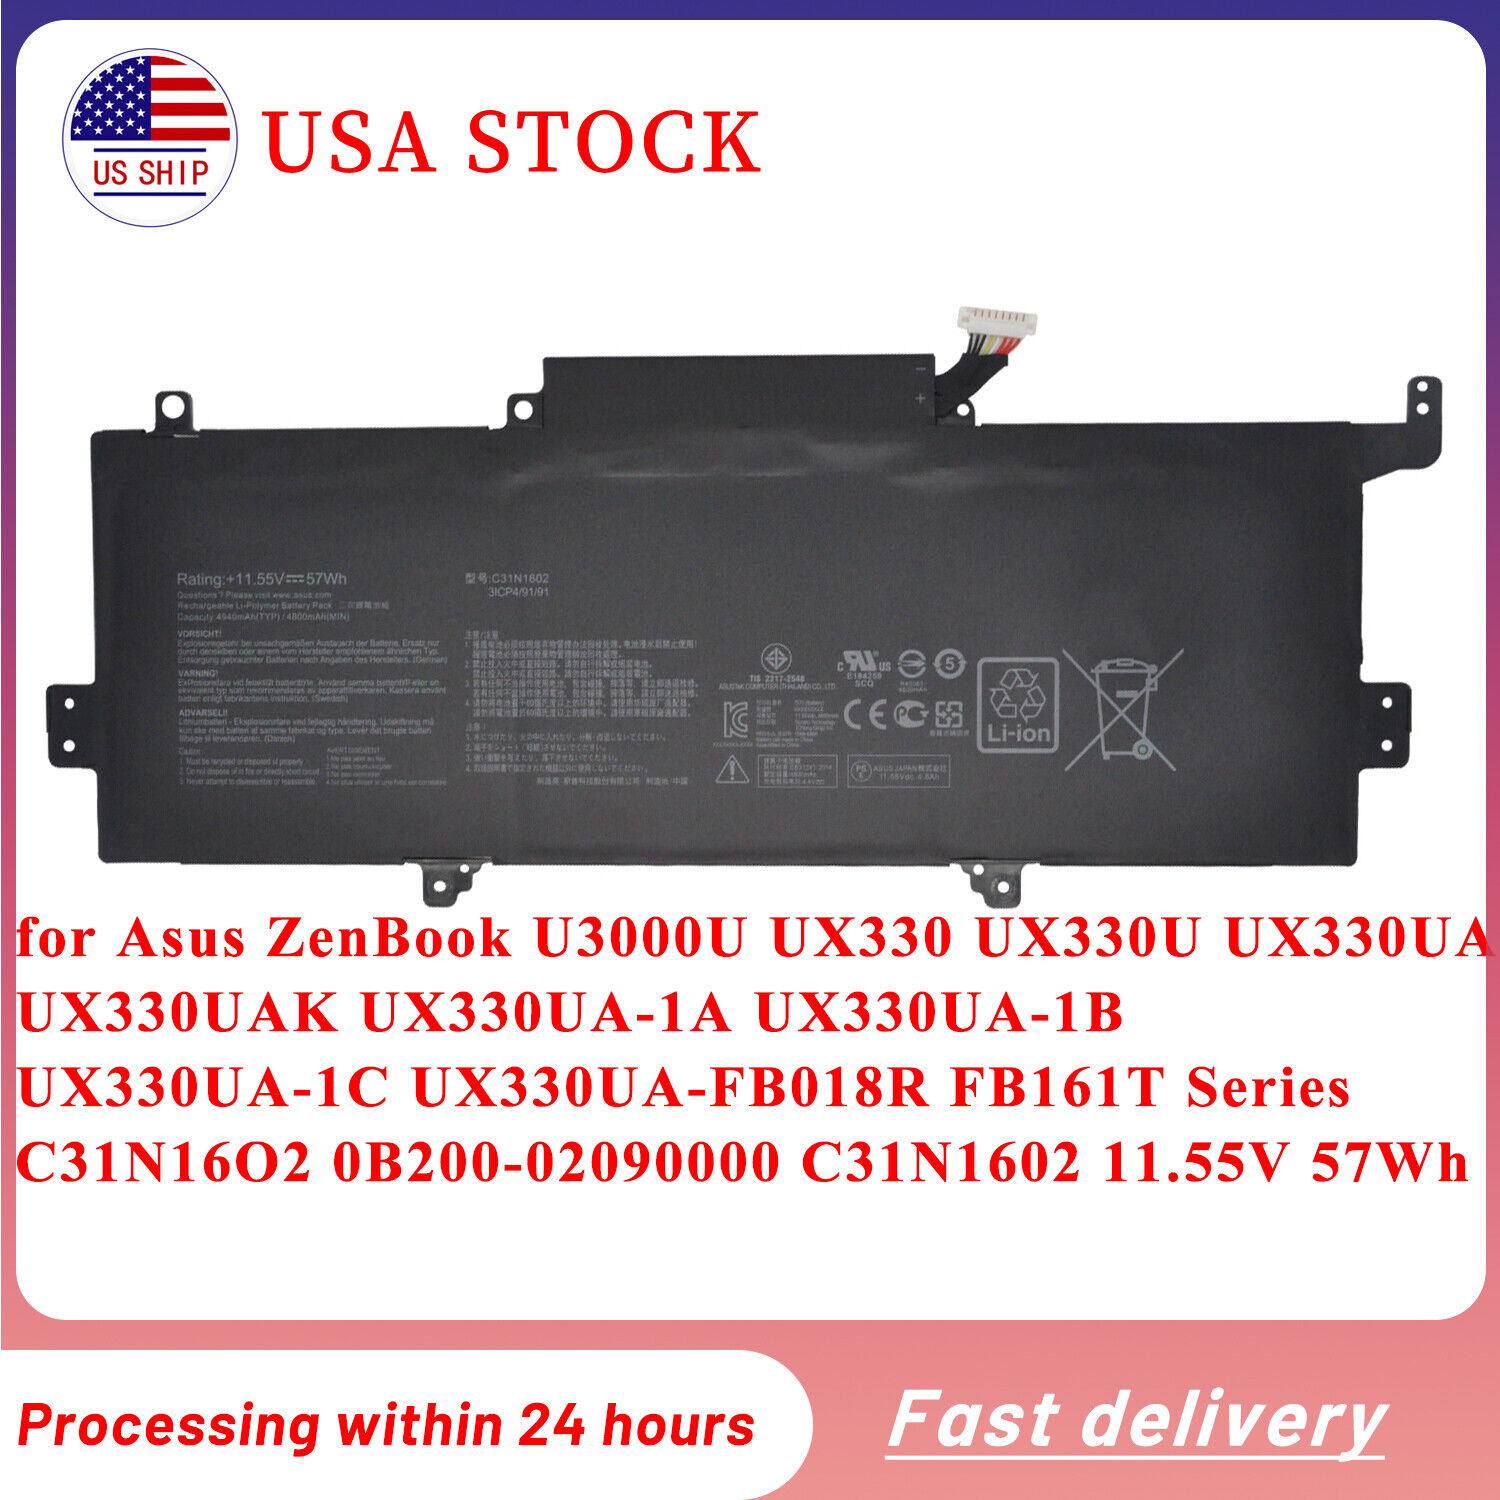 C31N1602 Battery for Asus ZenBook U3000U UX330 UX330U UX330UA UX330UA-1A 57Wh